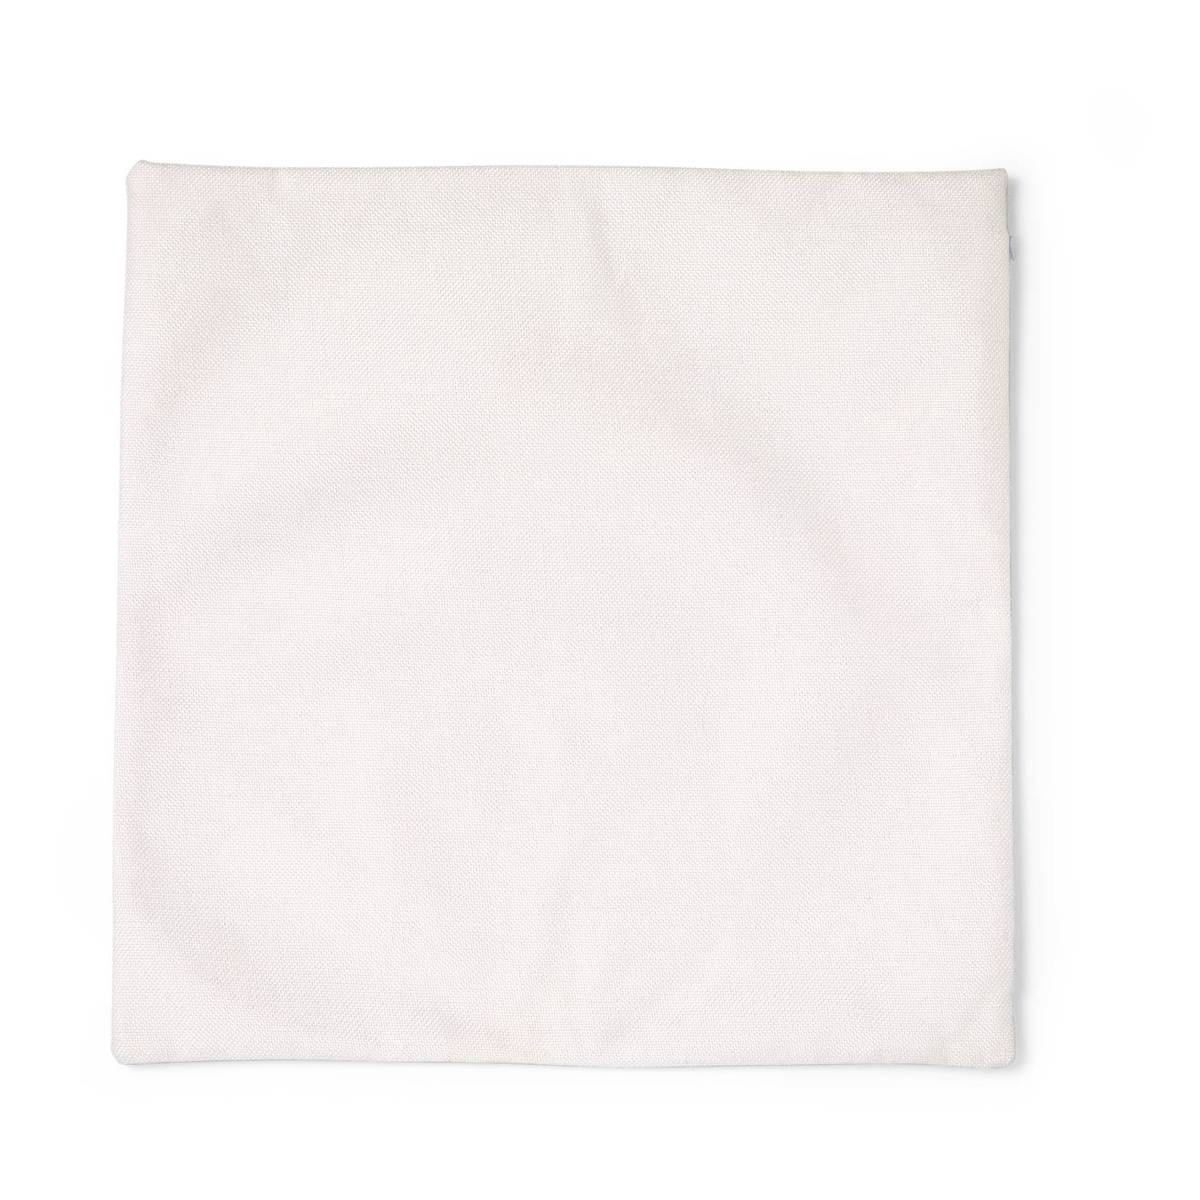 Cricut Cream Texture Cushion Cover